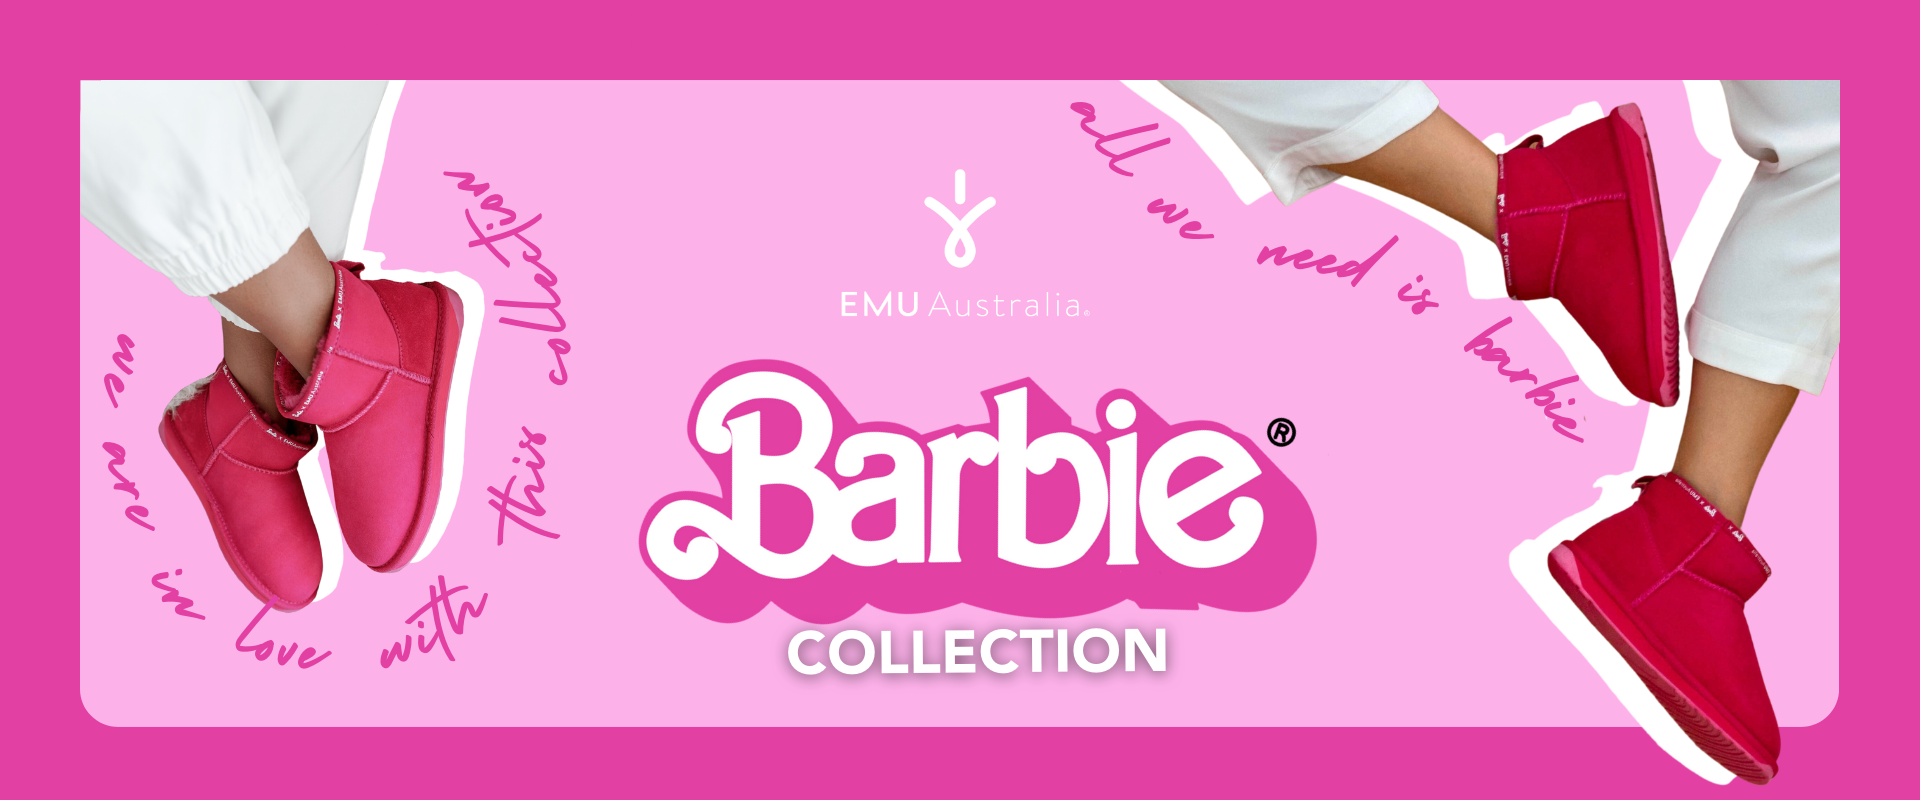 emu barbie